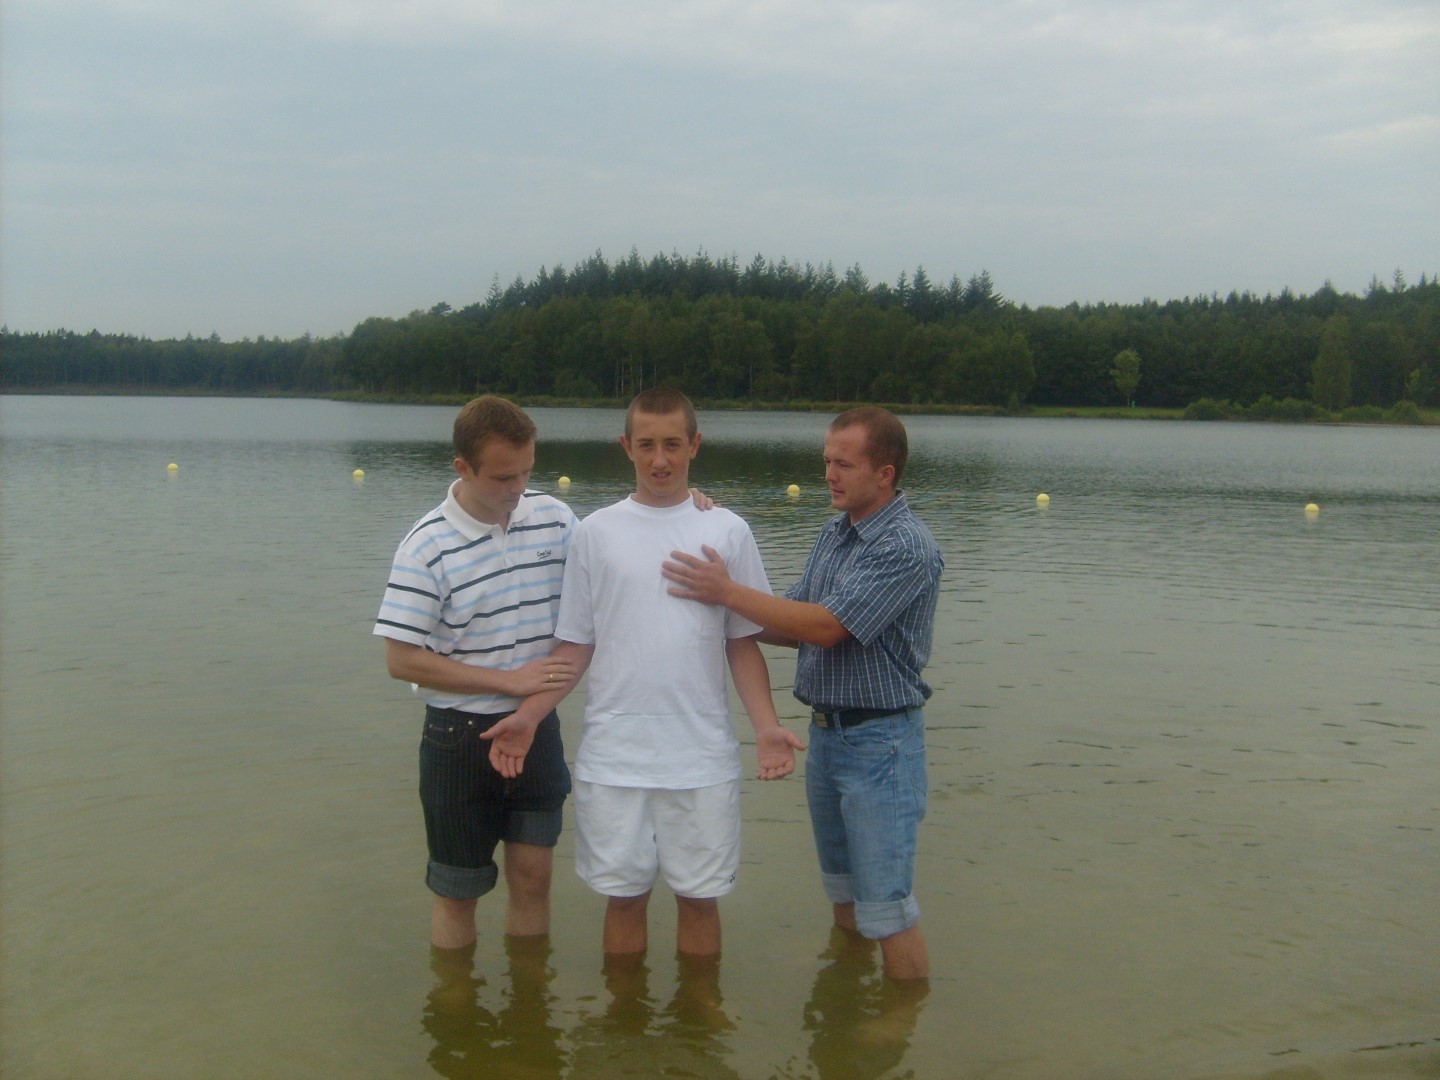 المعمودية doop nederland هيردر ستراند